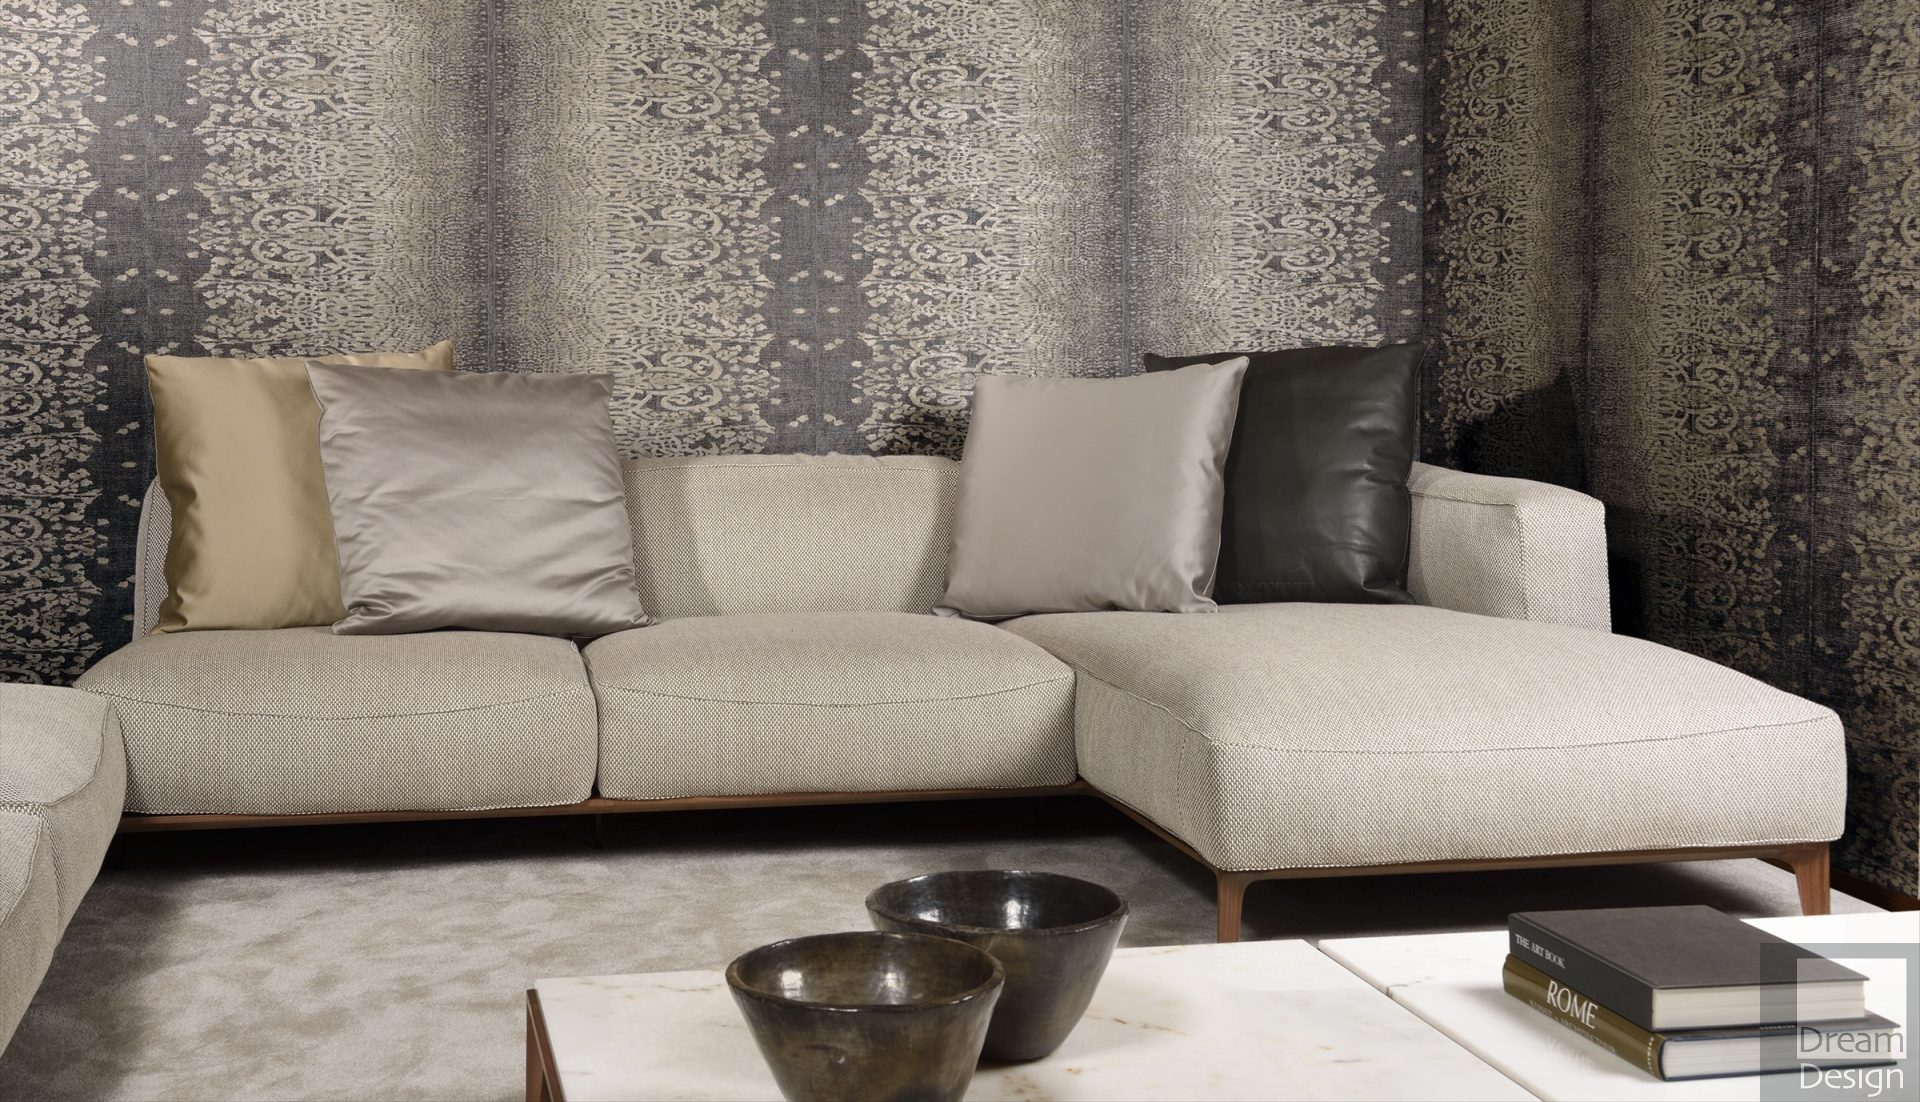 Giorgetti Aton Sofa - Dream Design Interiors Ltd